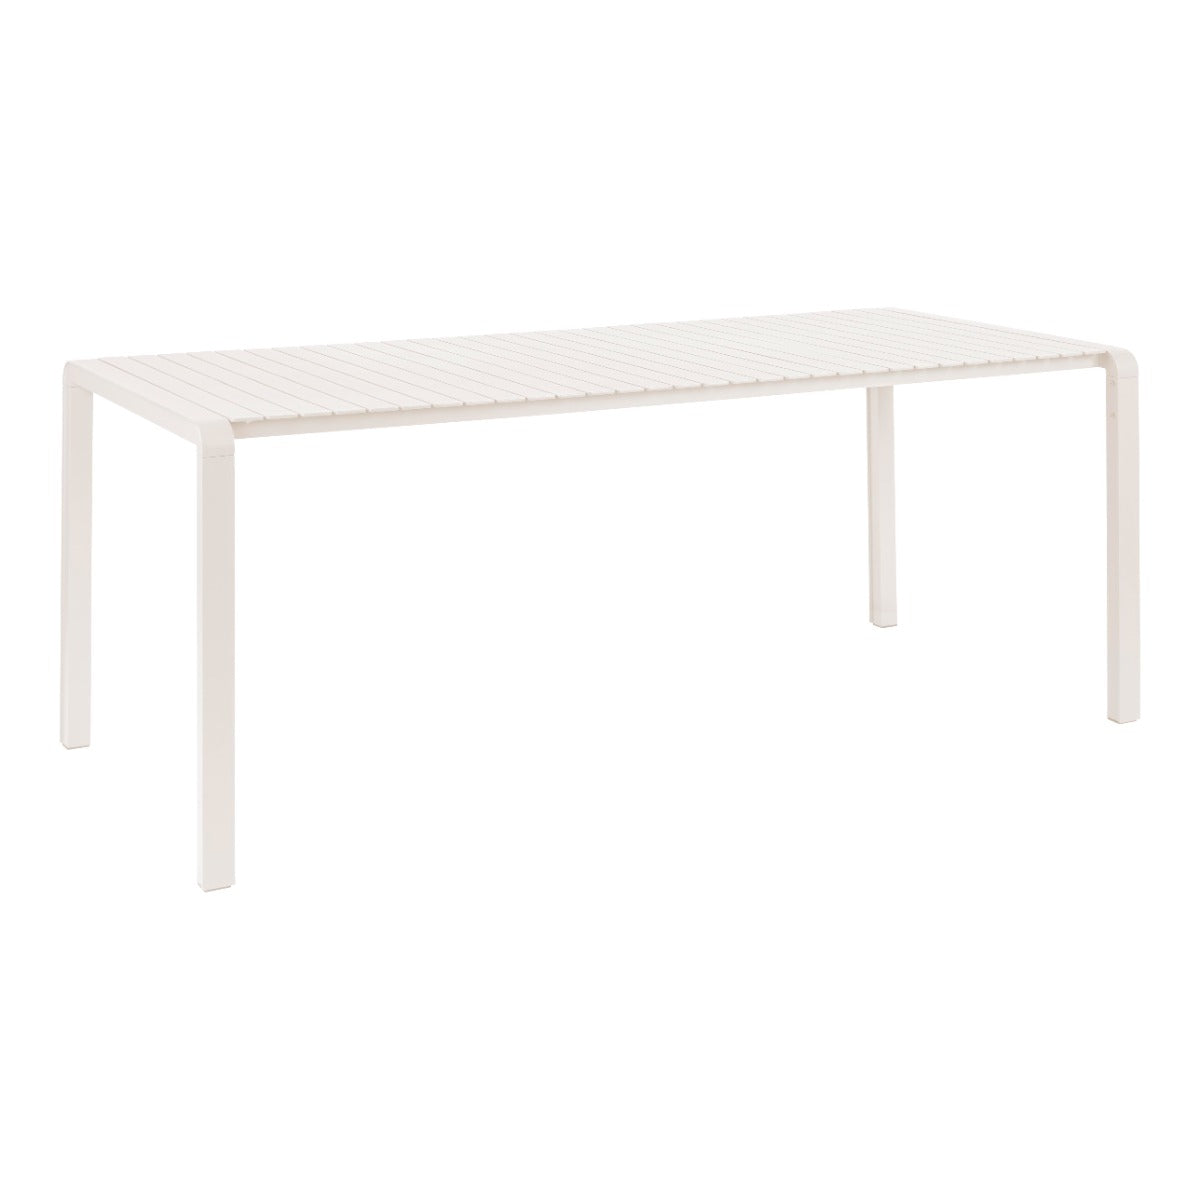 Garden table VONDEL white, Zuiver, Eye on Design